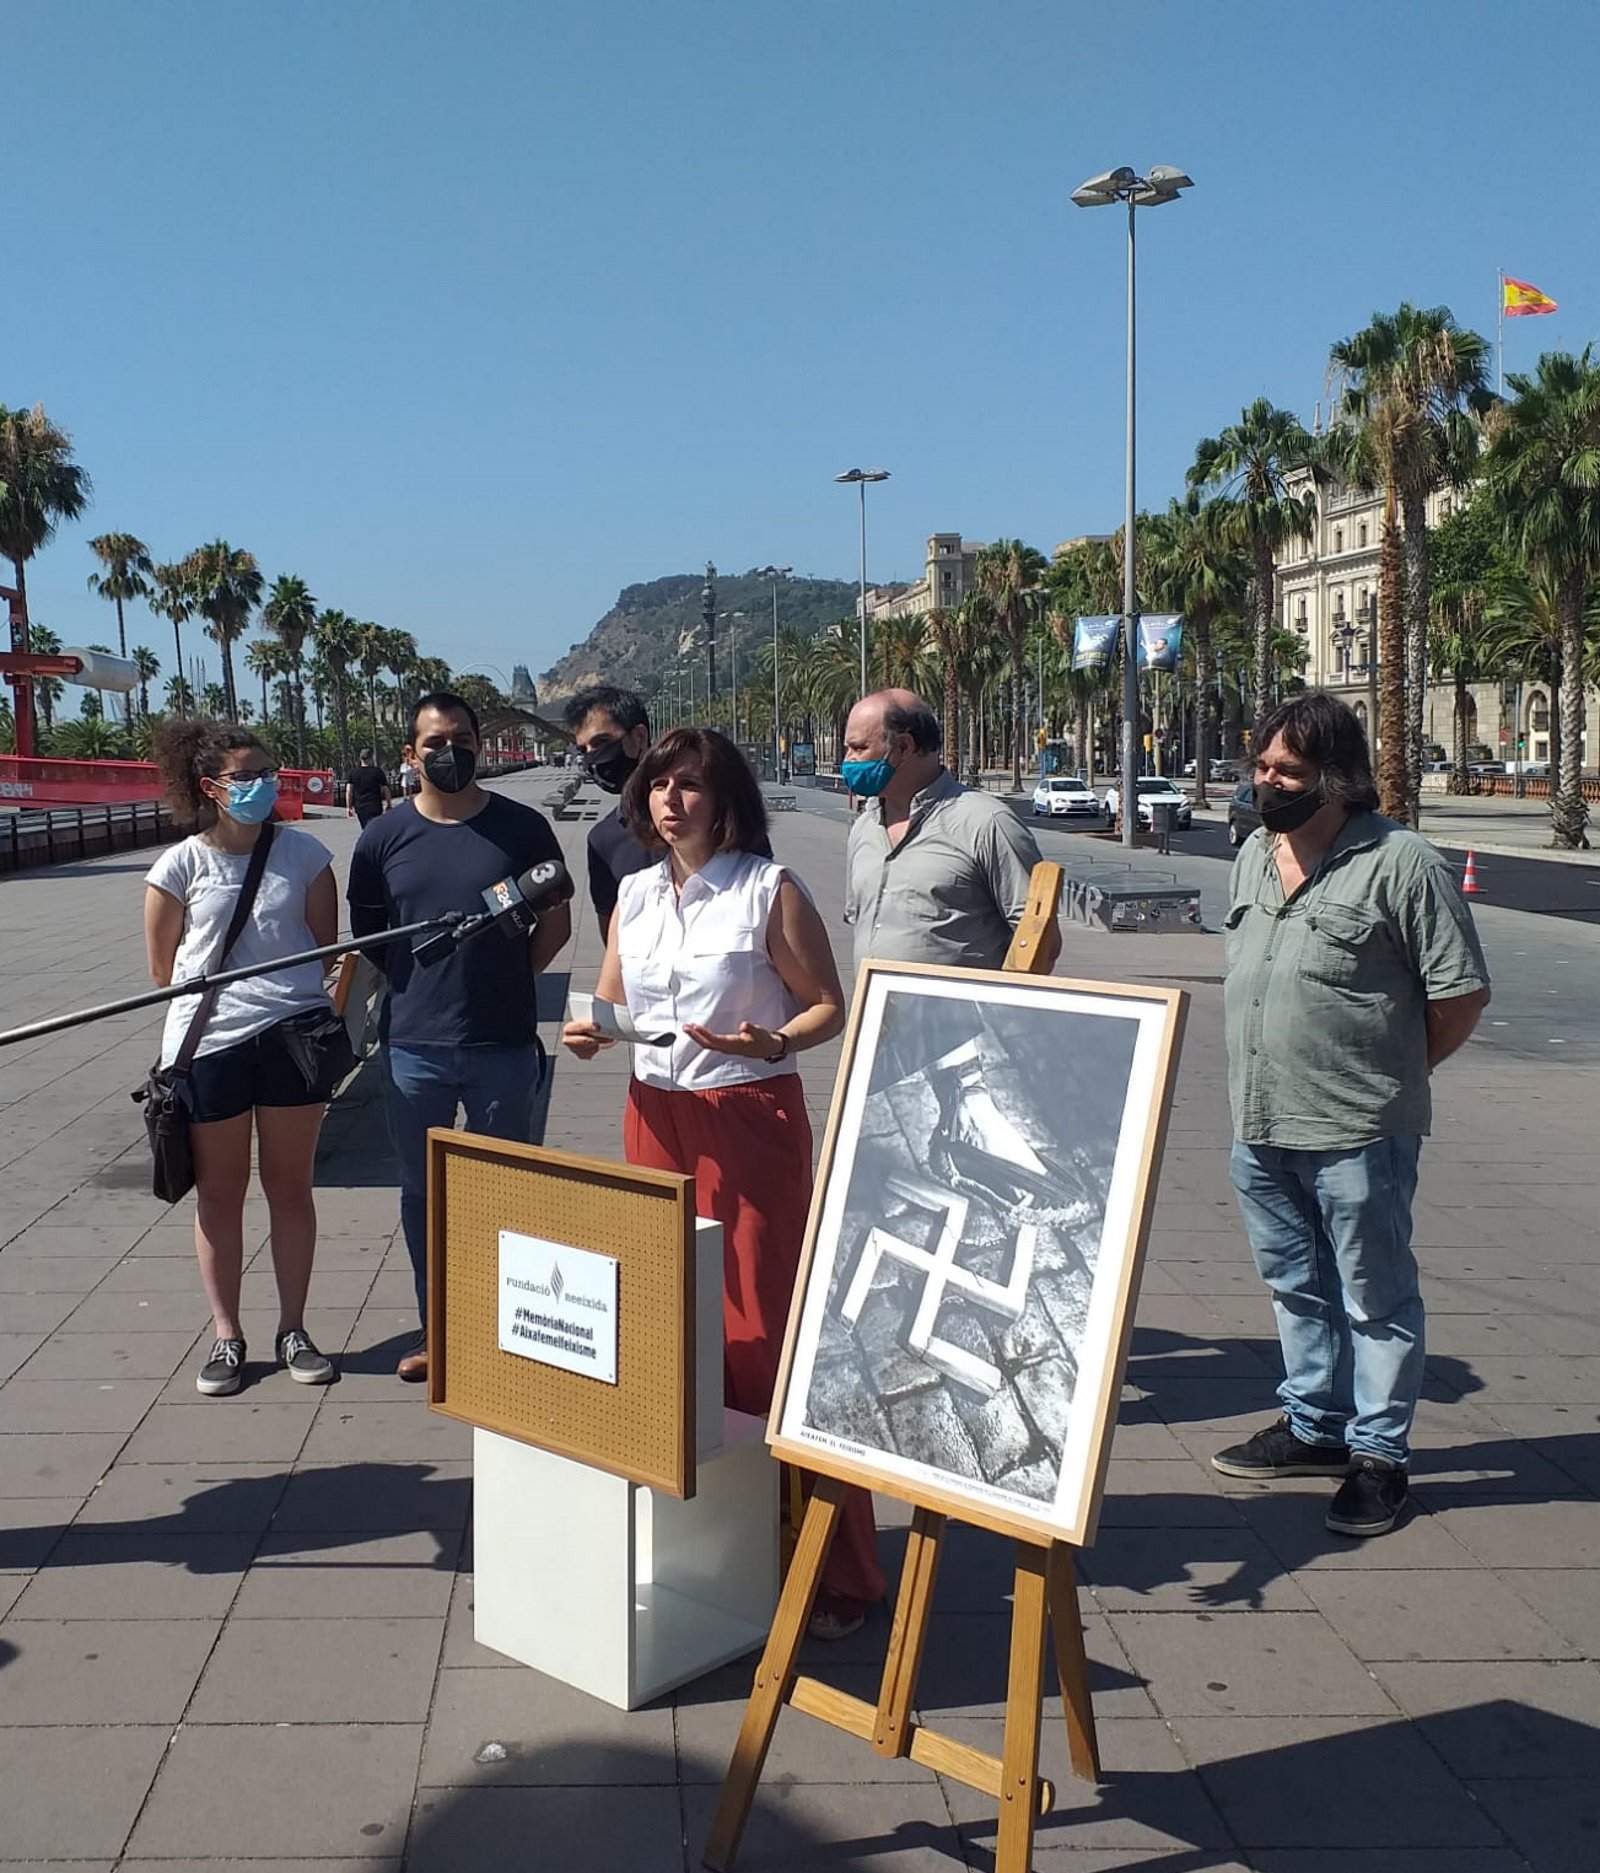 Reeditan el famoso cartel antinazi 85 años después del golpe en Barcelona